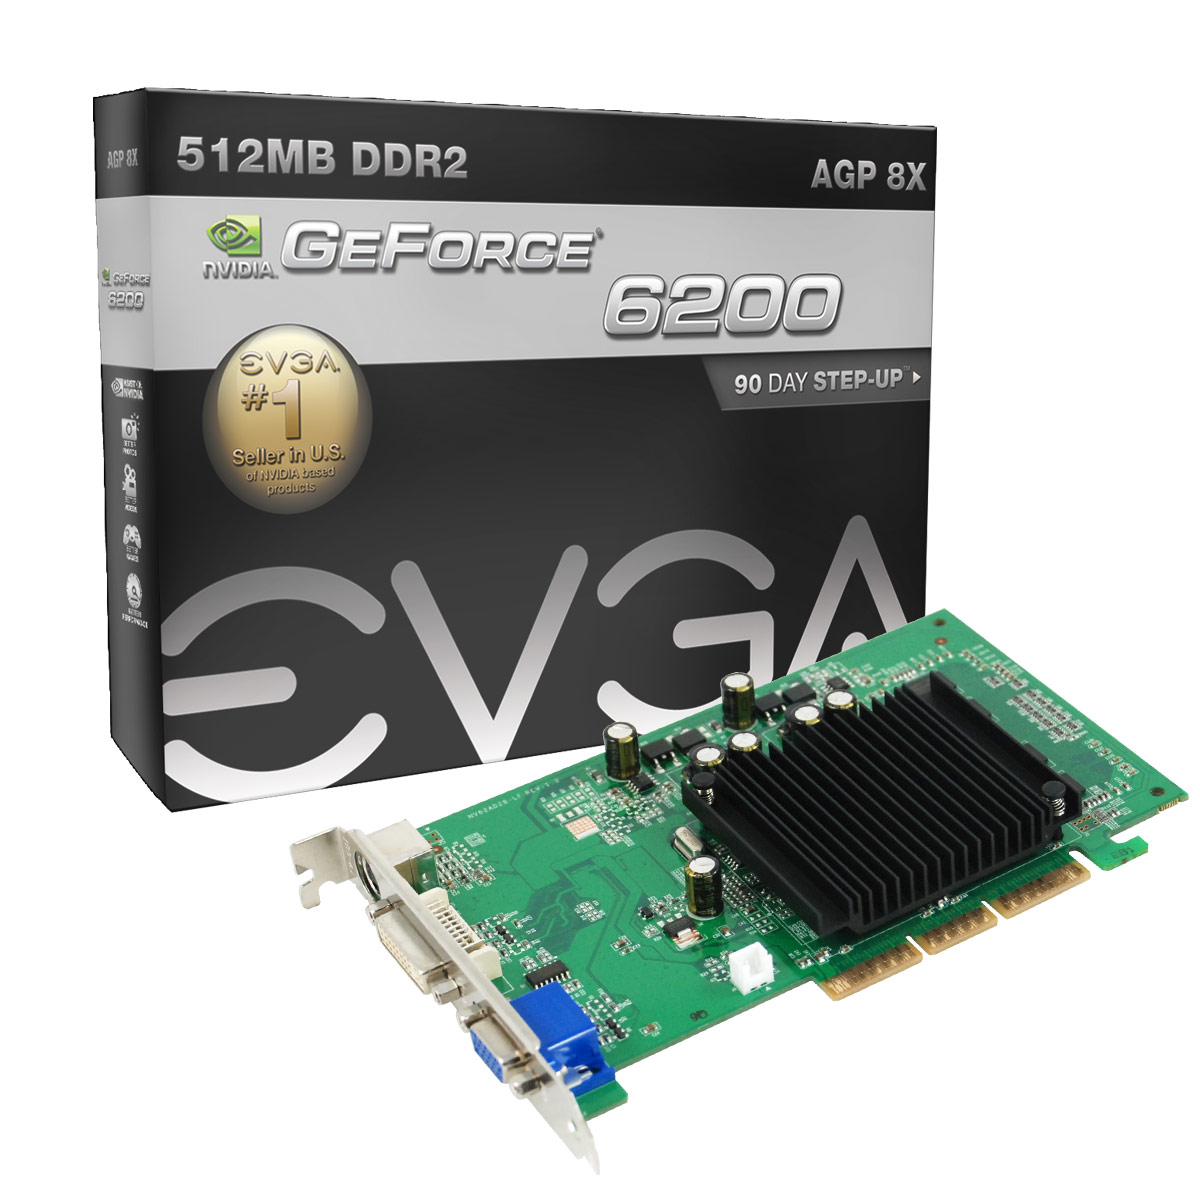 Драйвера для видеокарты nvidia geforce 6200 скачать